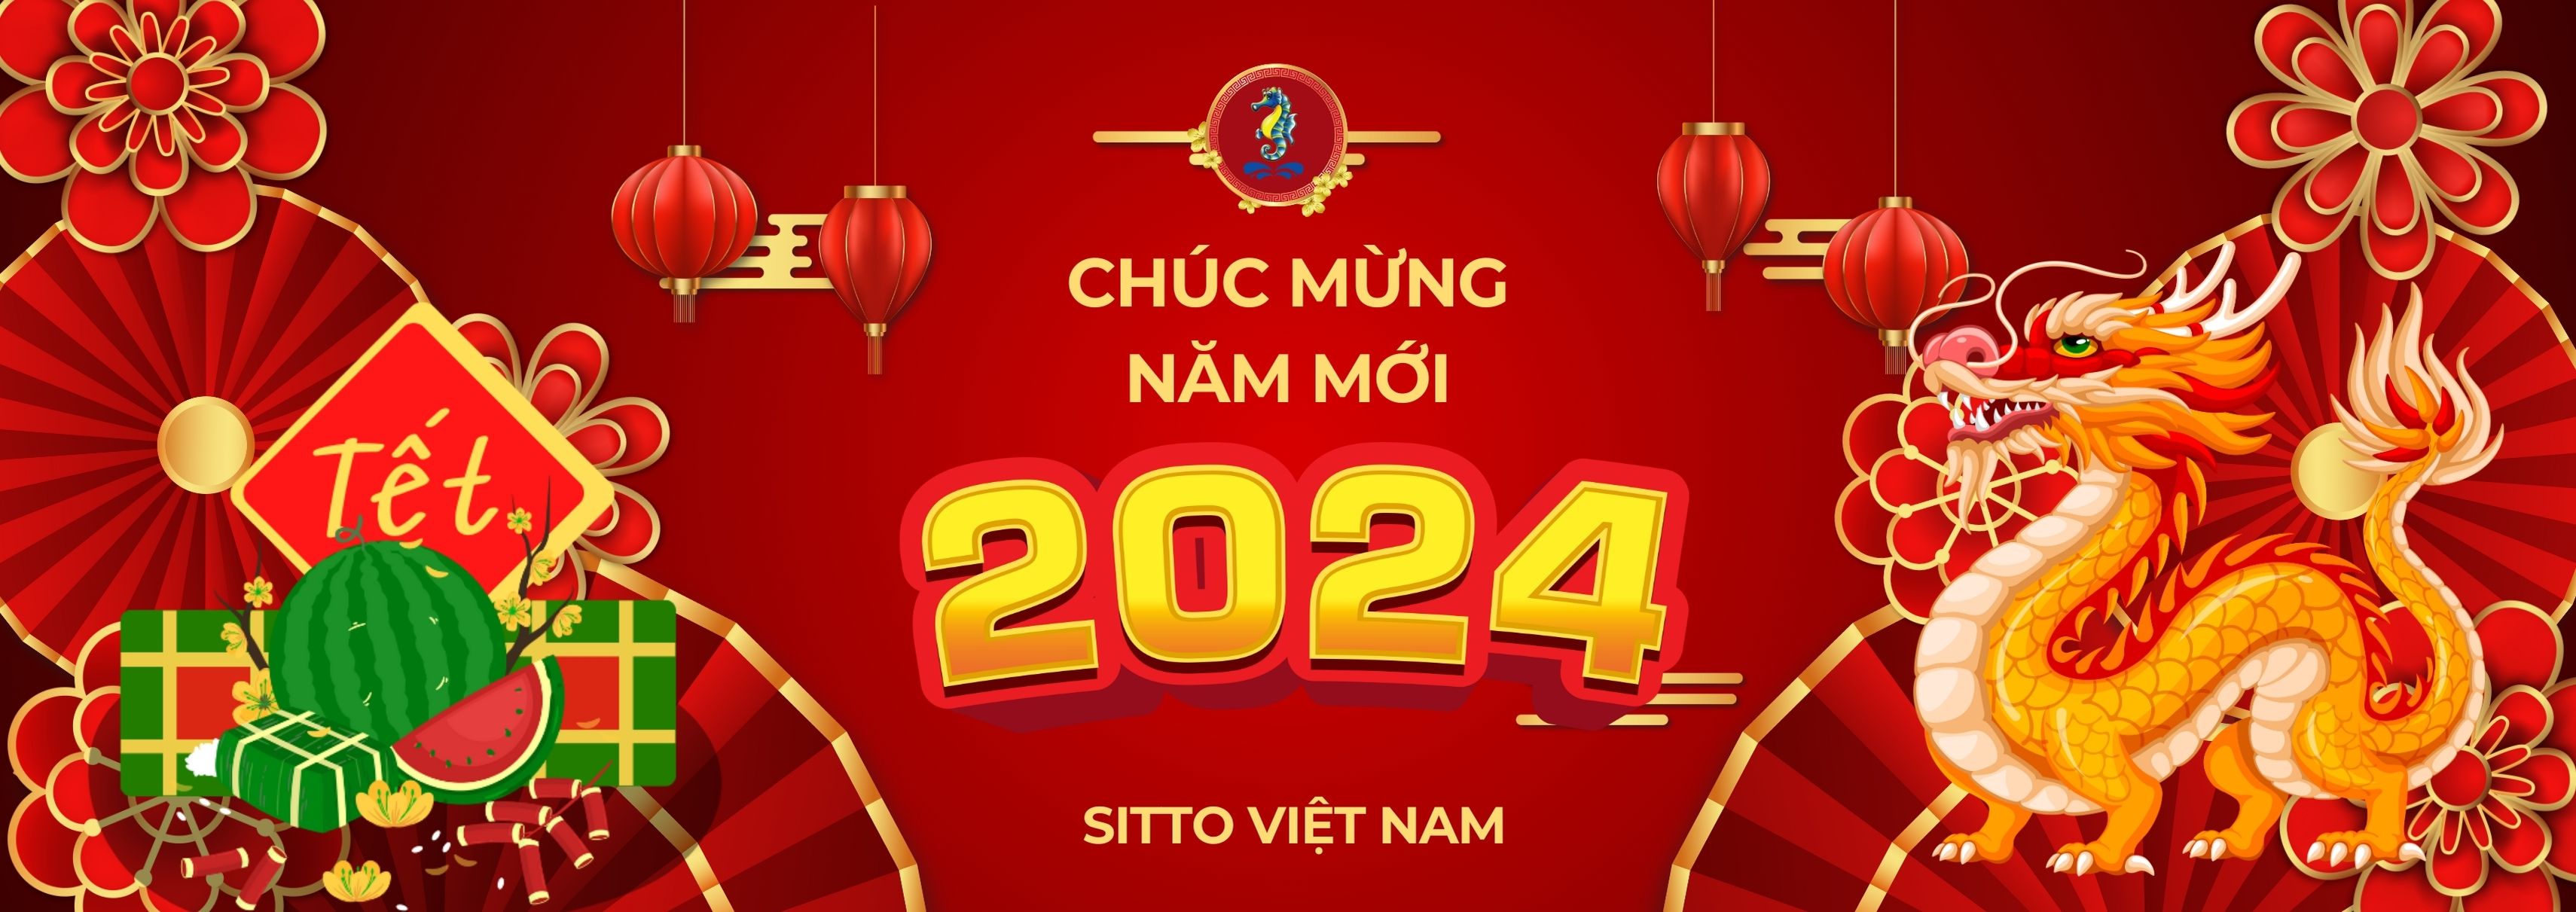 Chúc mừng năm mới - Giáp Thìn - 2024